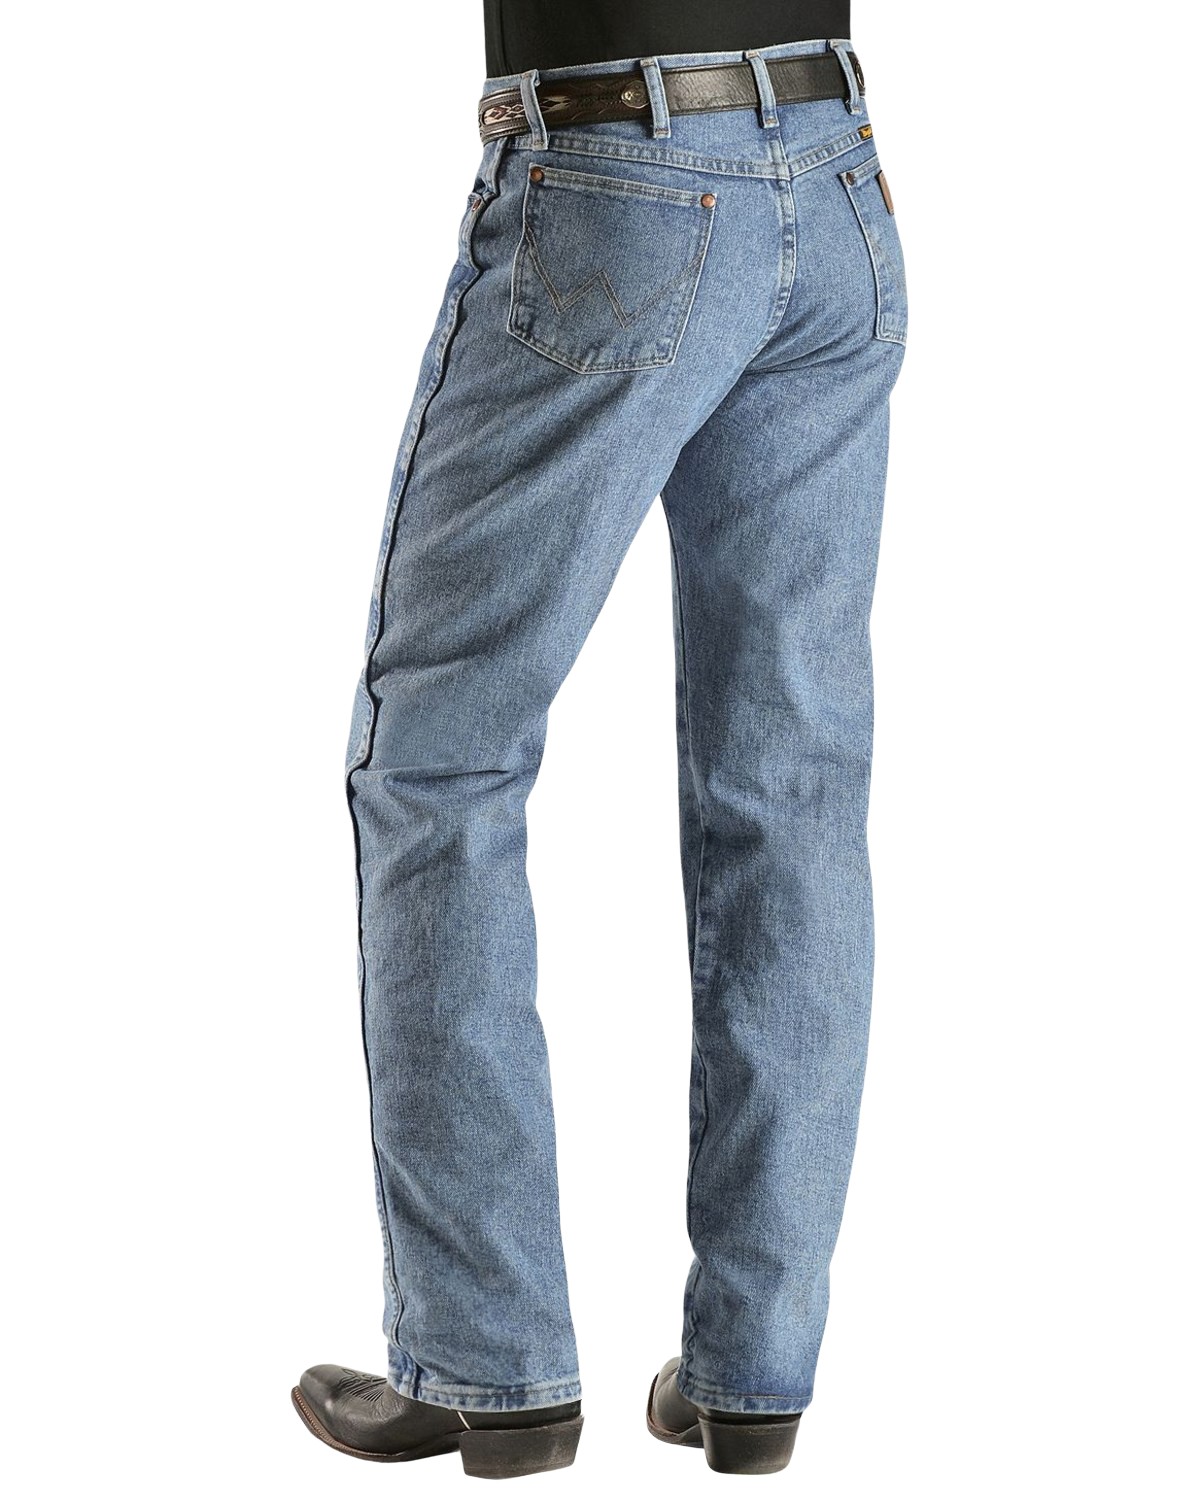 Wrangler Men's 13Mwz Jeans Cowboy Cut Original Fit Prewashed Antique Blue 33W x 32L  US - image 1 of 2